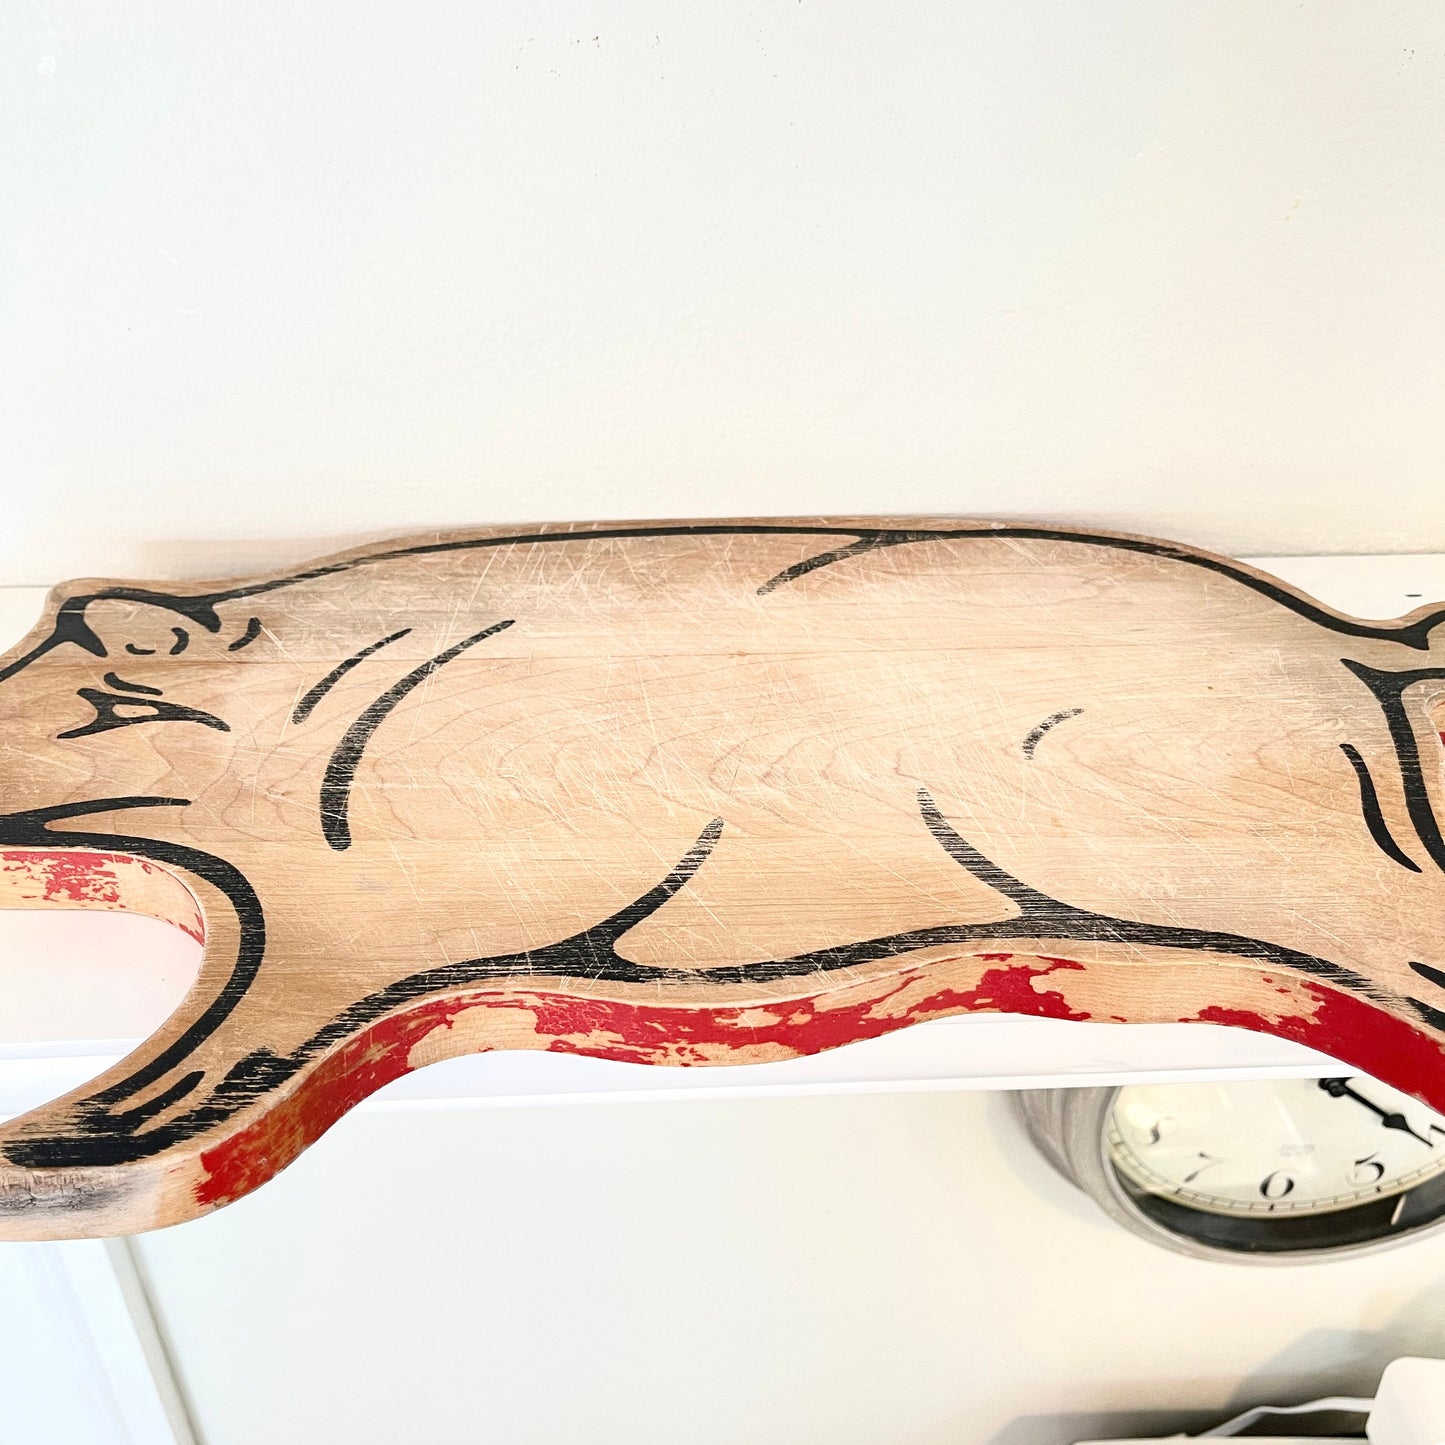 Vintage Pig Bread Board, Pig Cutting Board, Farmhouse Pig Decor, Kitchen Pork Cutting Board, Pig Farmer Gift